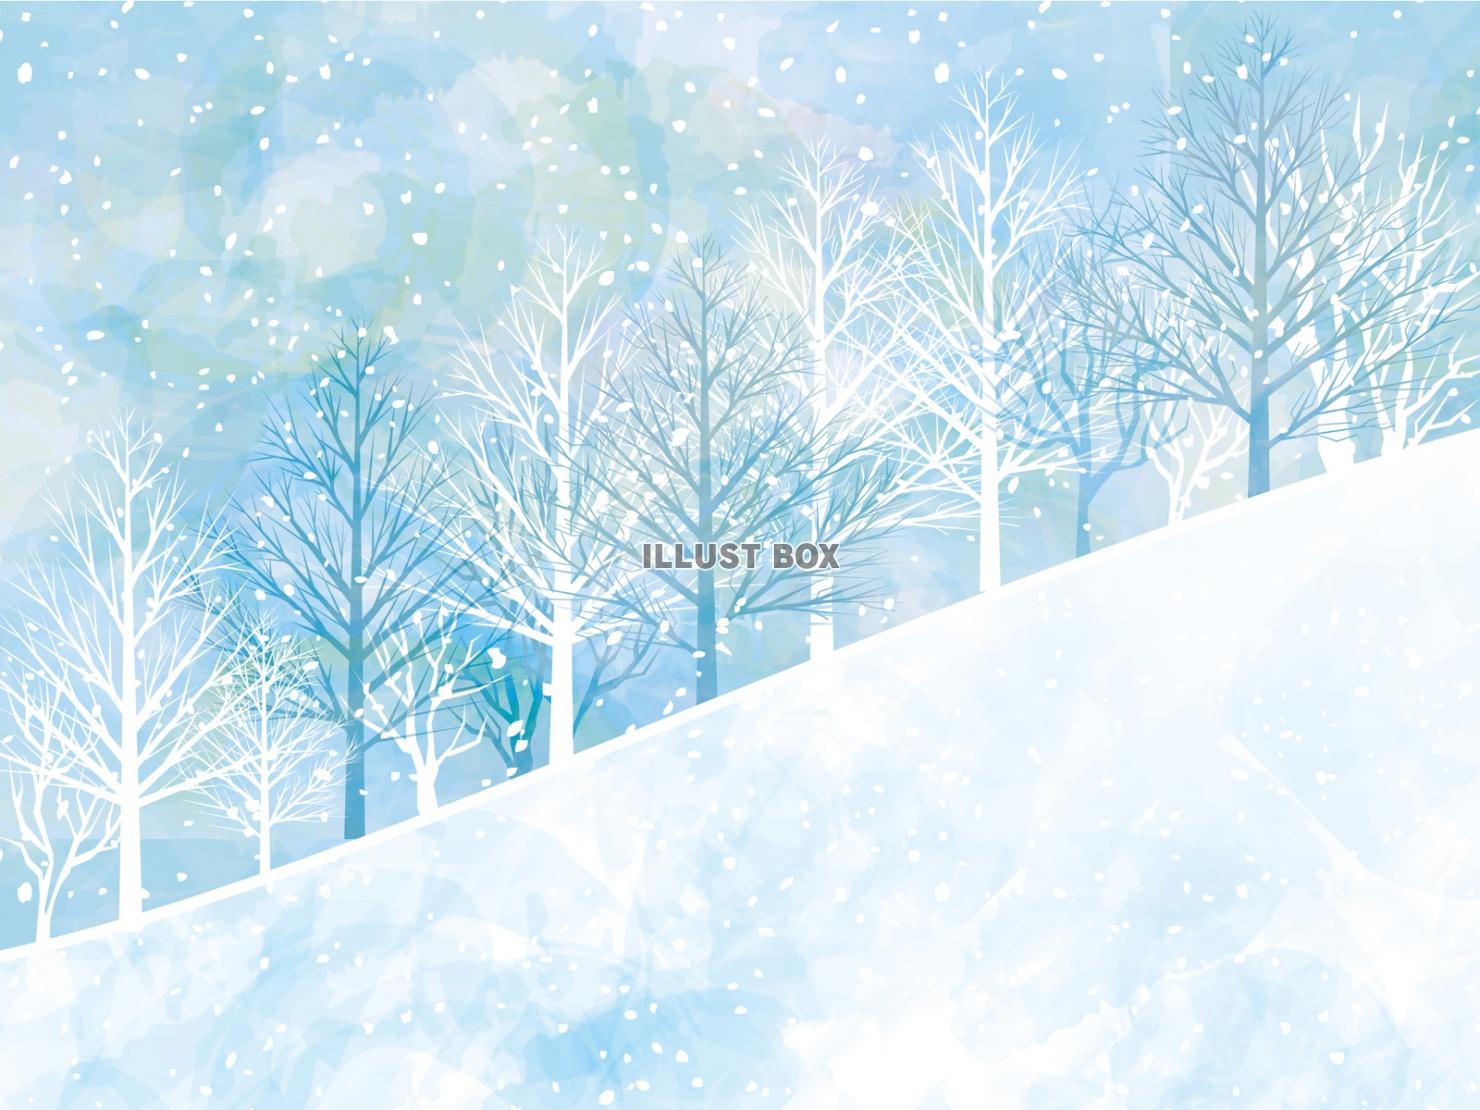 無料イラスト 雪山ゲレンデ雪景色スキー場樹木森林イラスト雪空背景12月1月